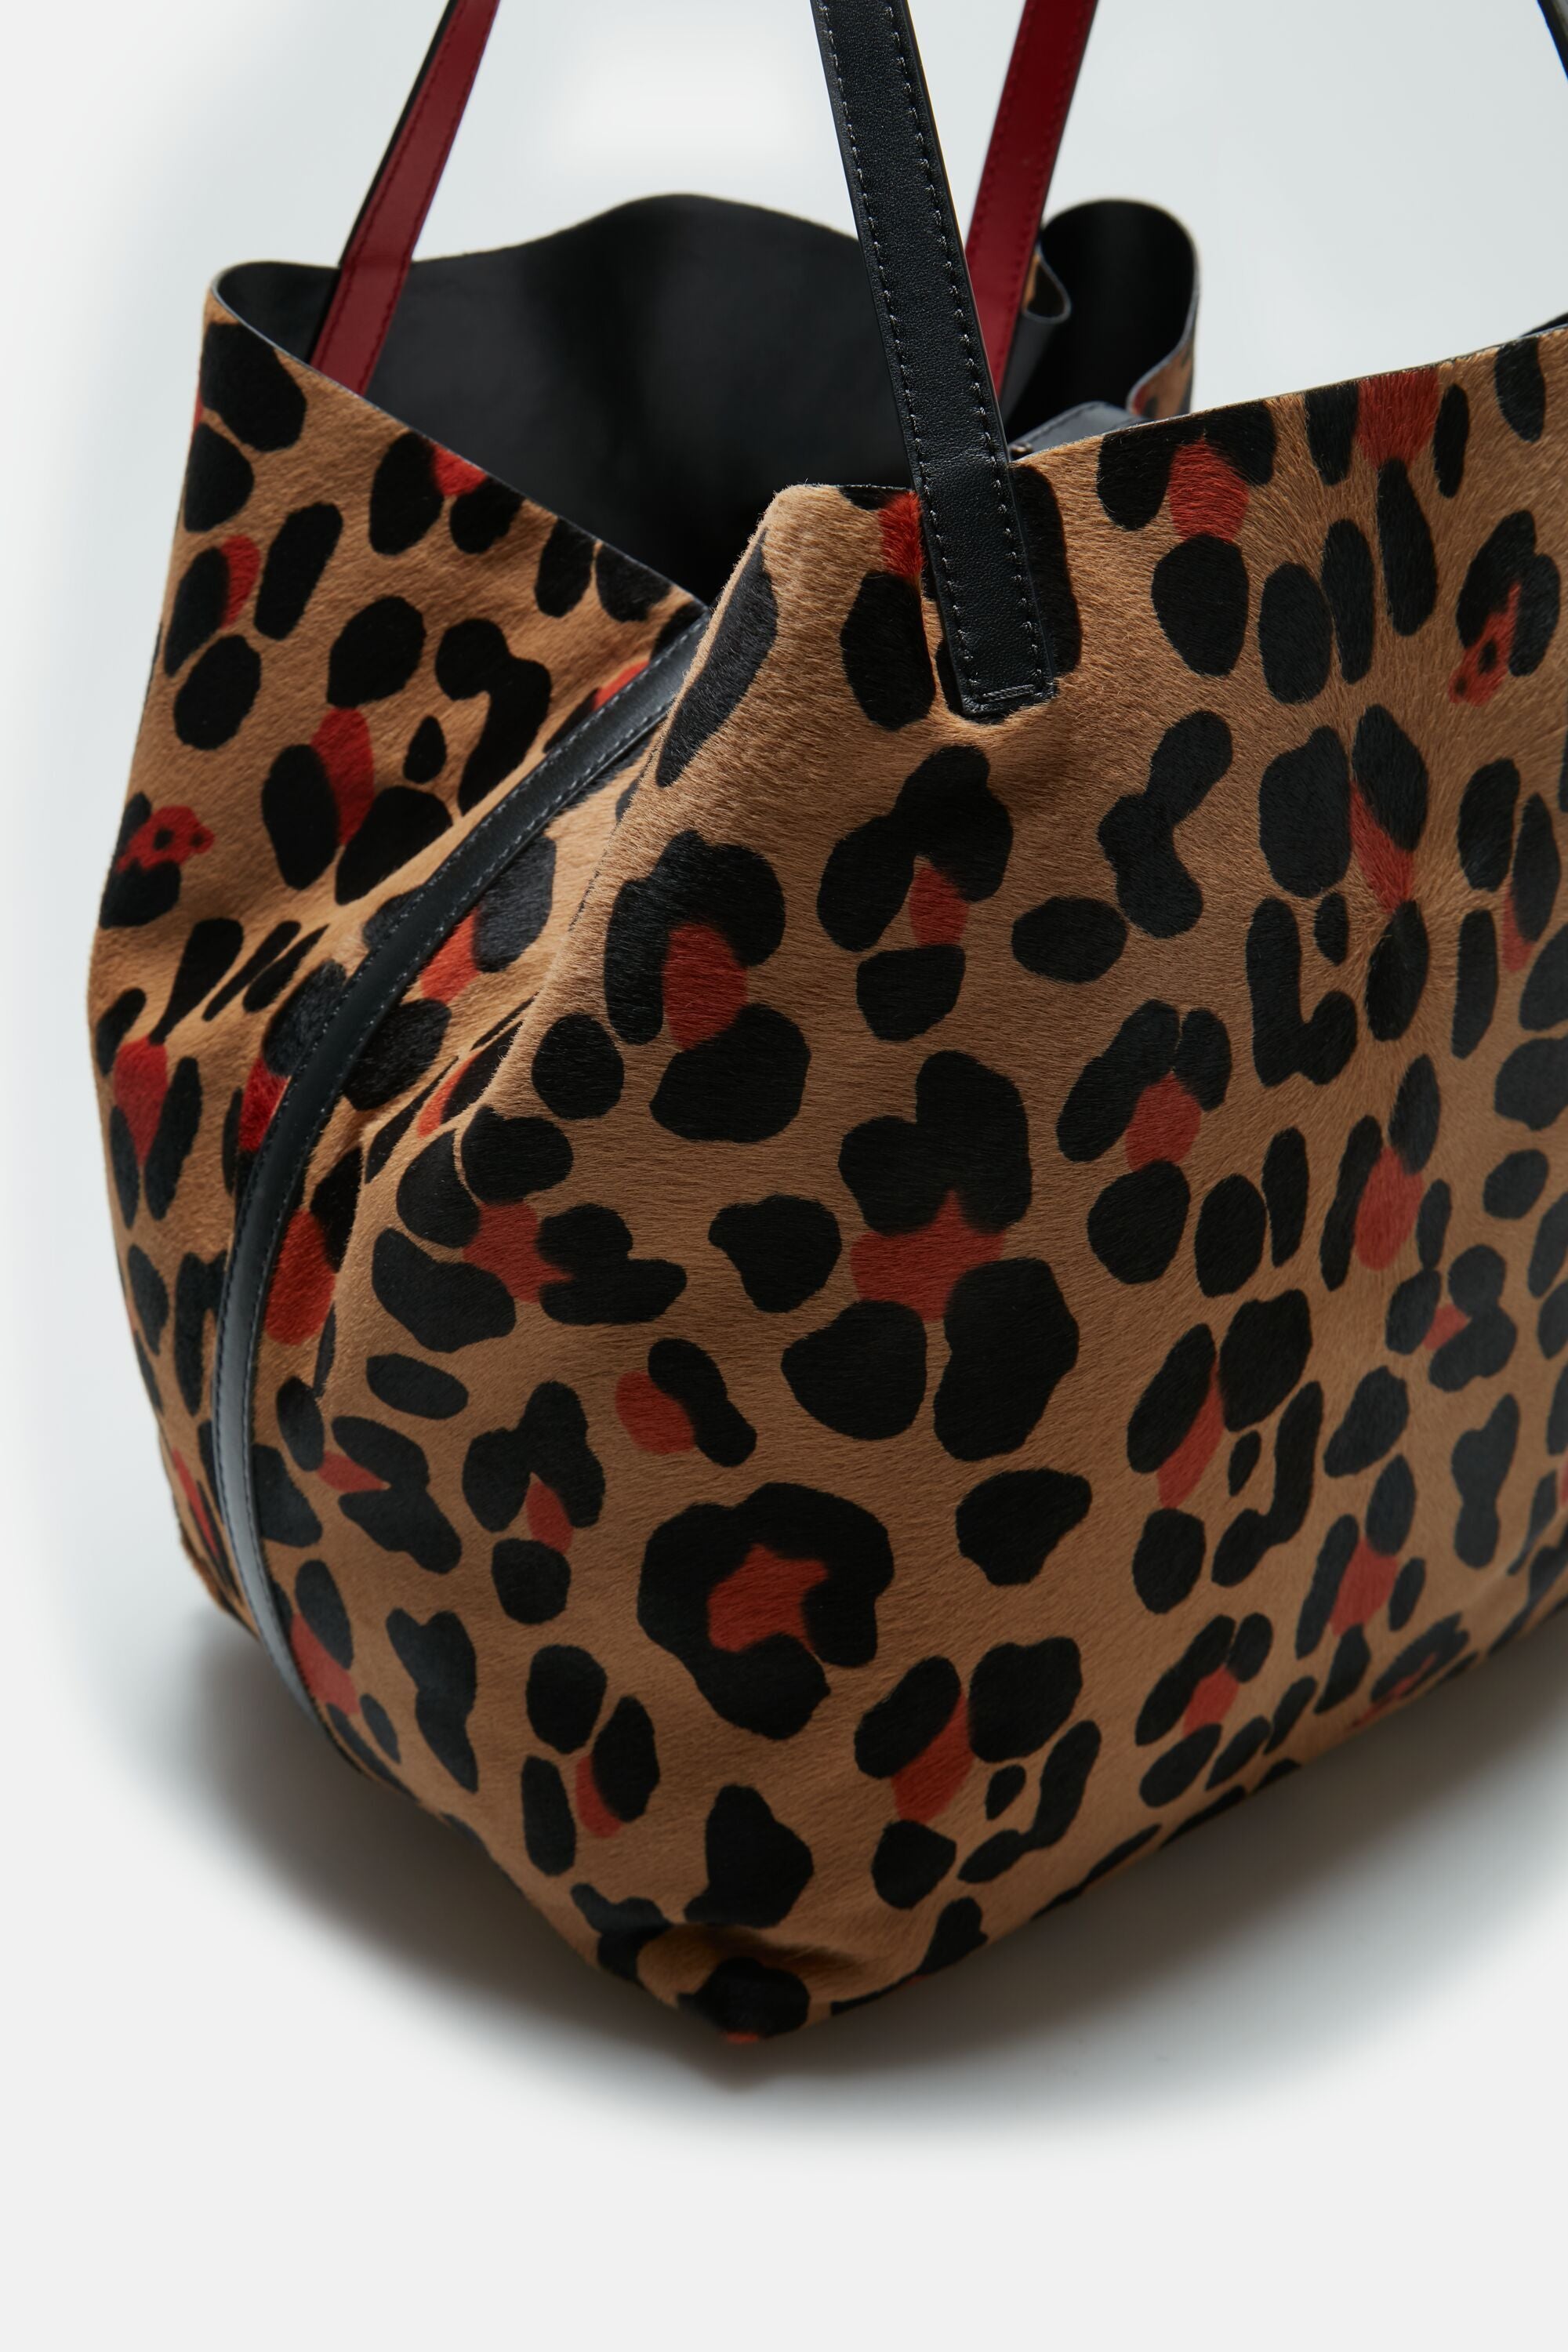 leopard handbag